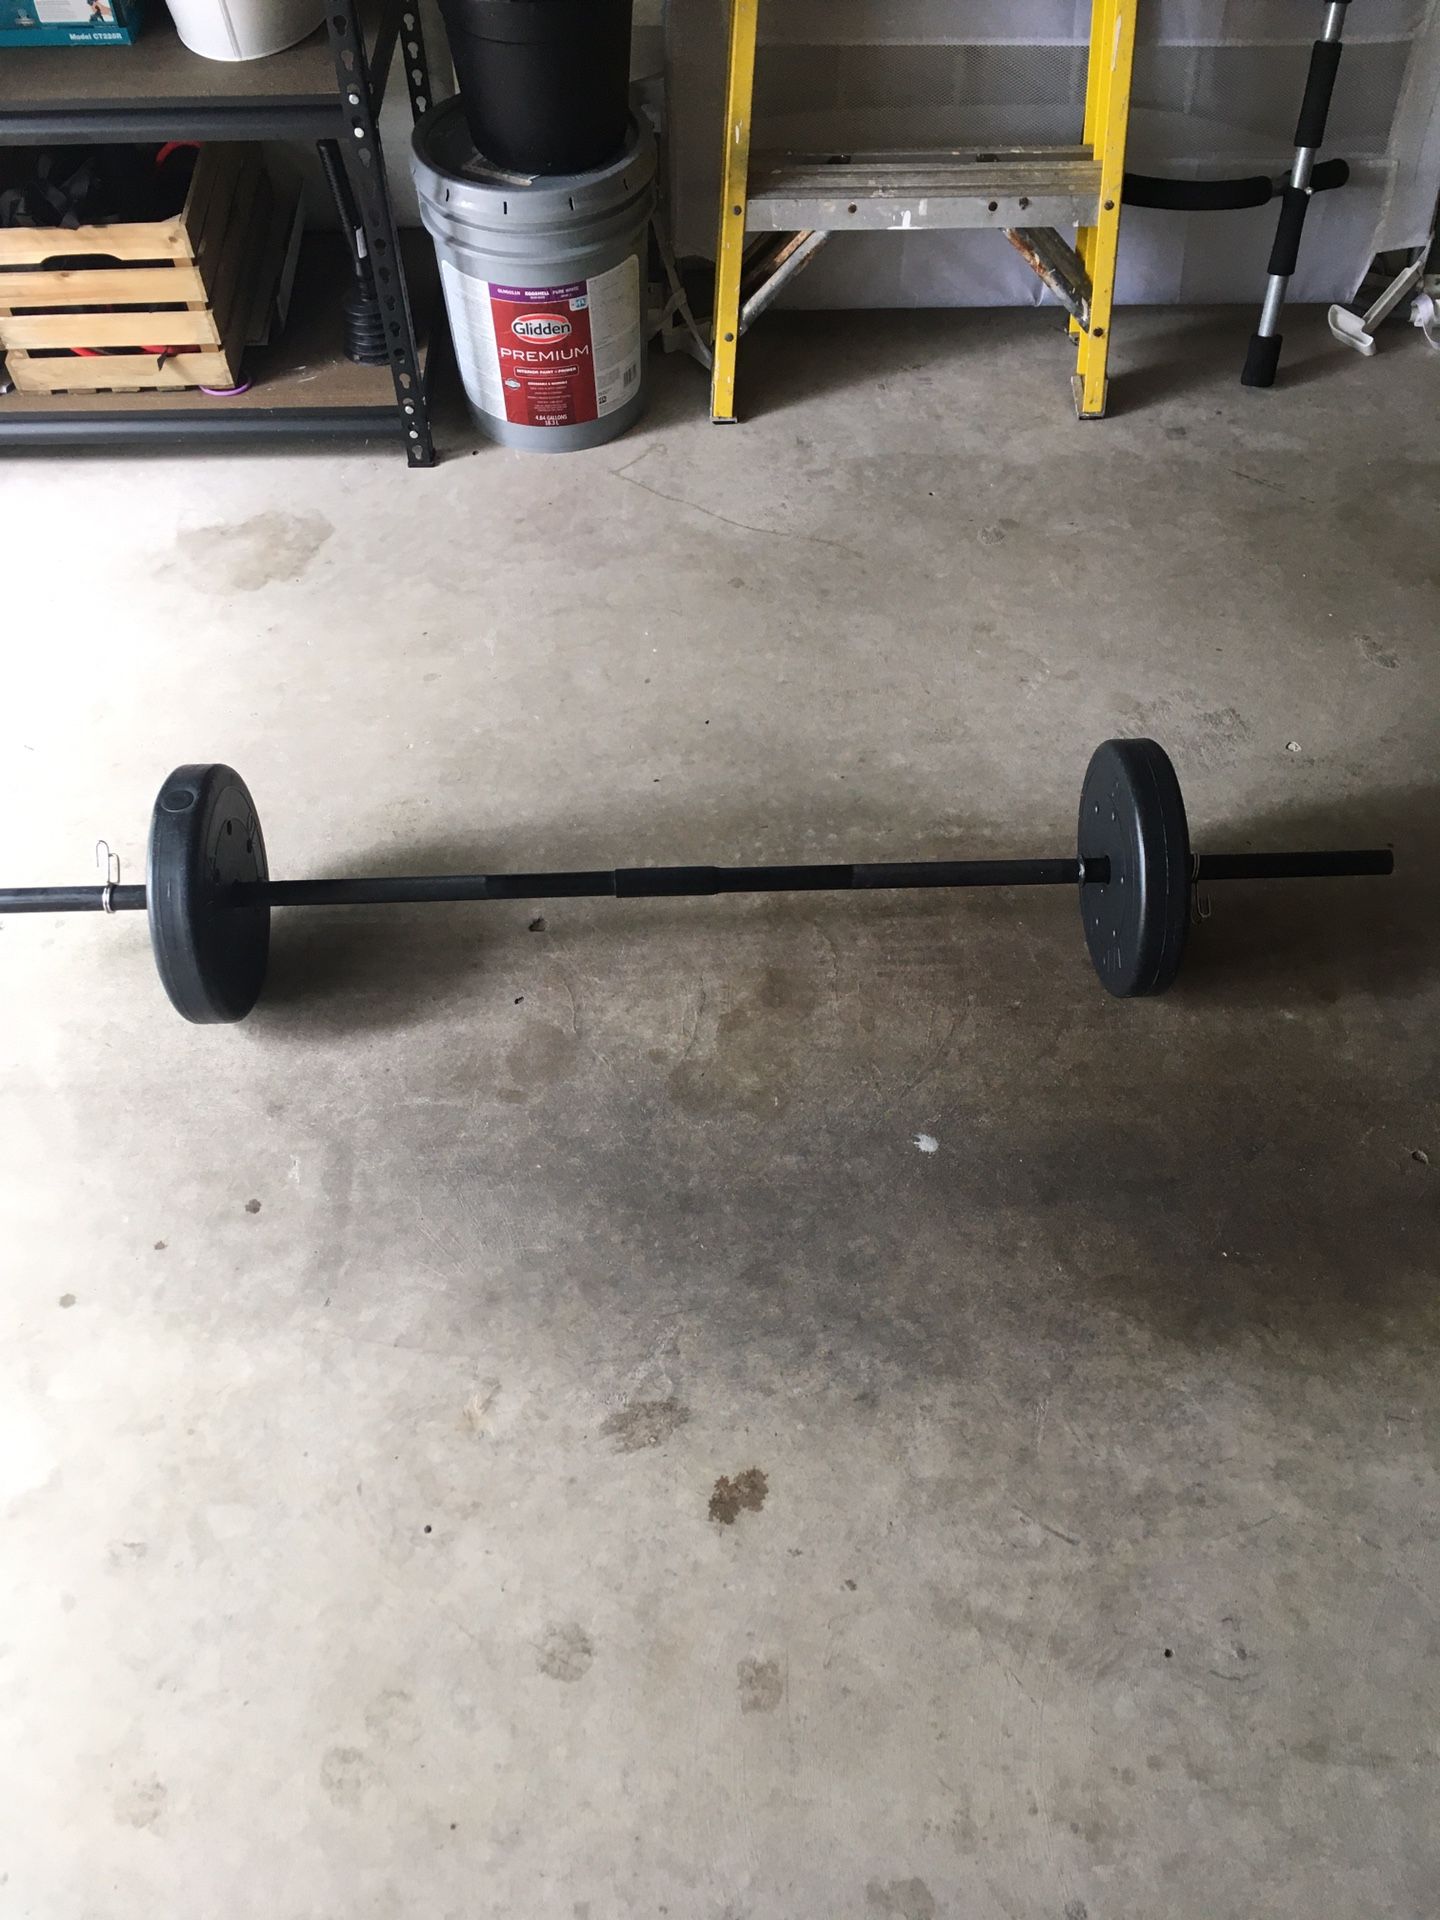 Standard bar 20 pounds weights